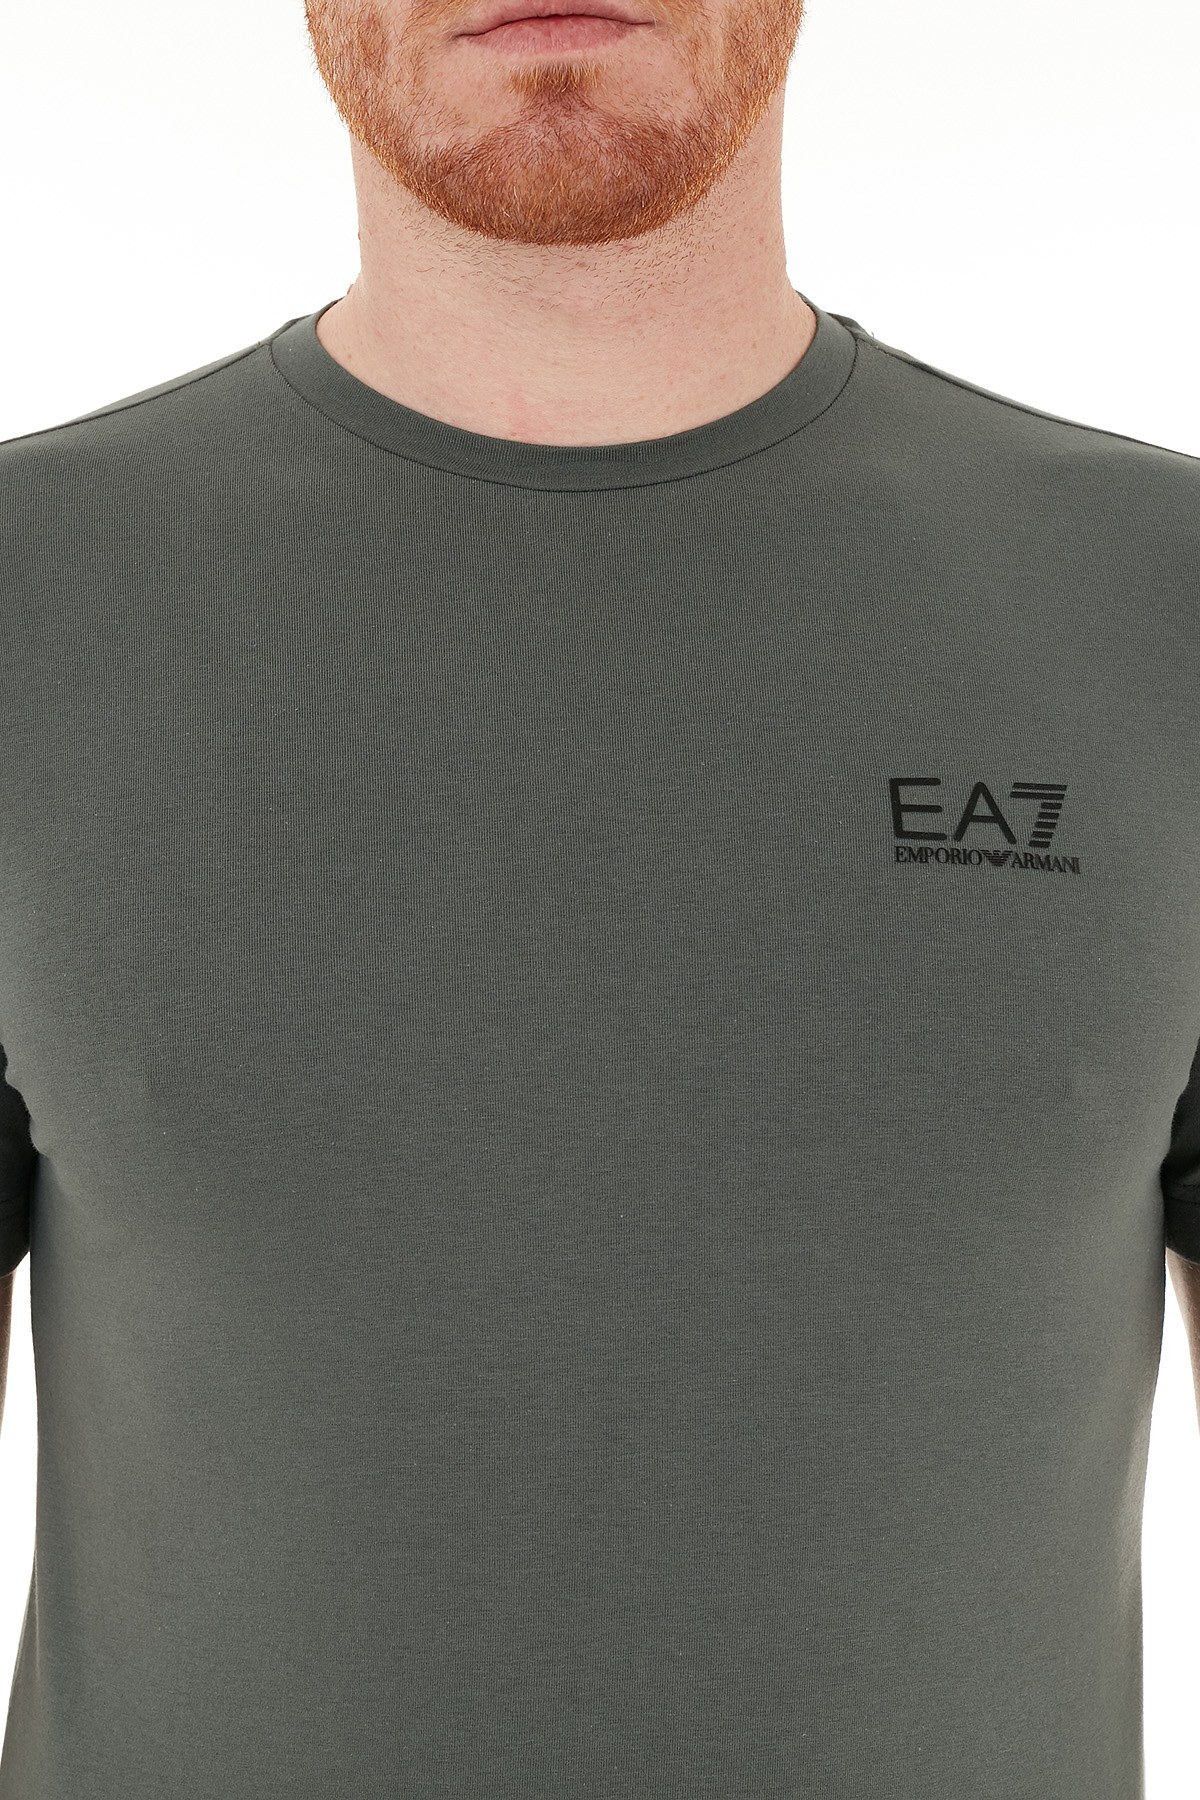 EA7 Logo Baskılı Bisiklet Yaka Pamuklu Erkek T Shirt S 8NPT52 PJM5Z 1984 YEŞİL